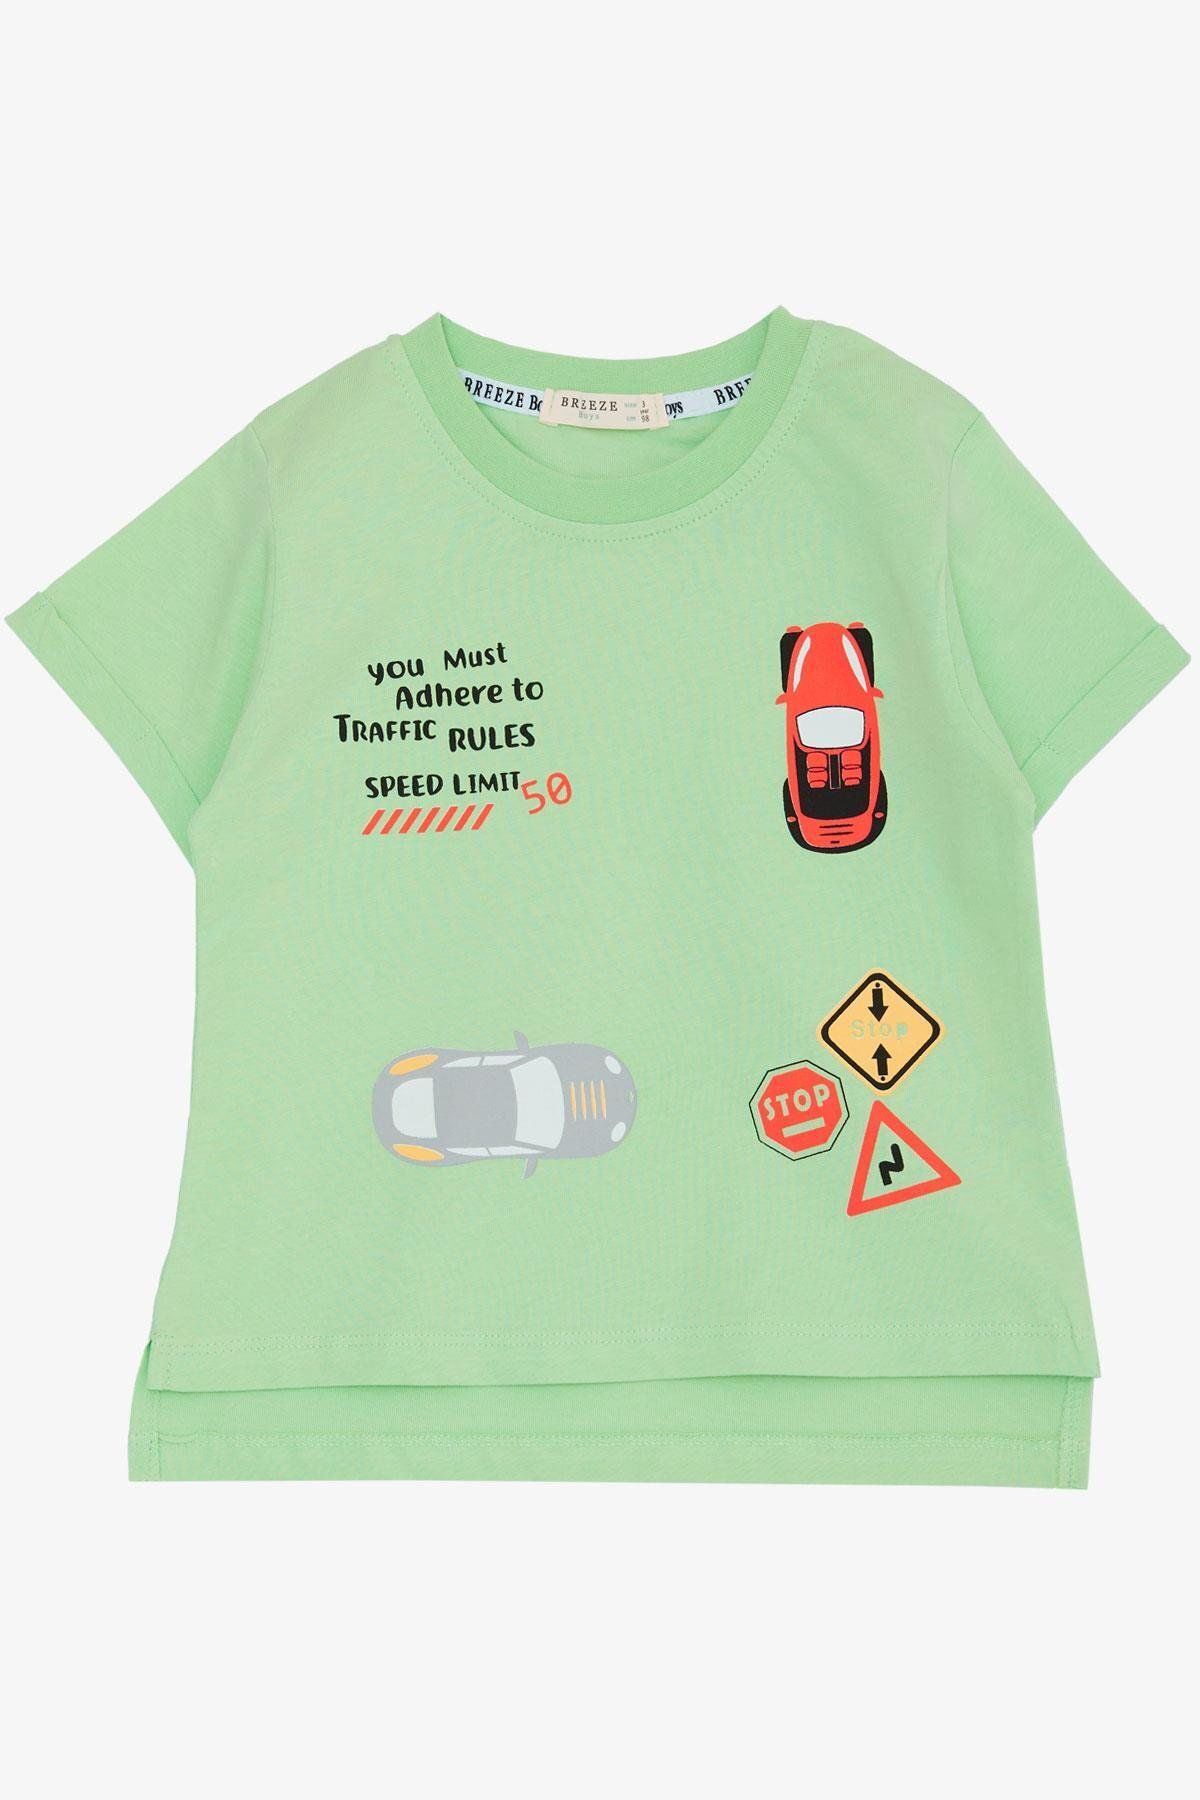 Breeze Erkek Çocuk Tişört Slogan Temalı Araba Baskılı 2-6 Yaş, Fıstık Yeşili